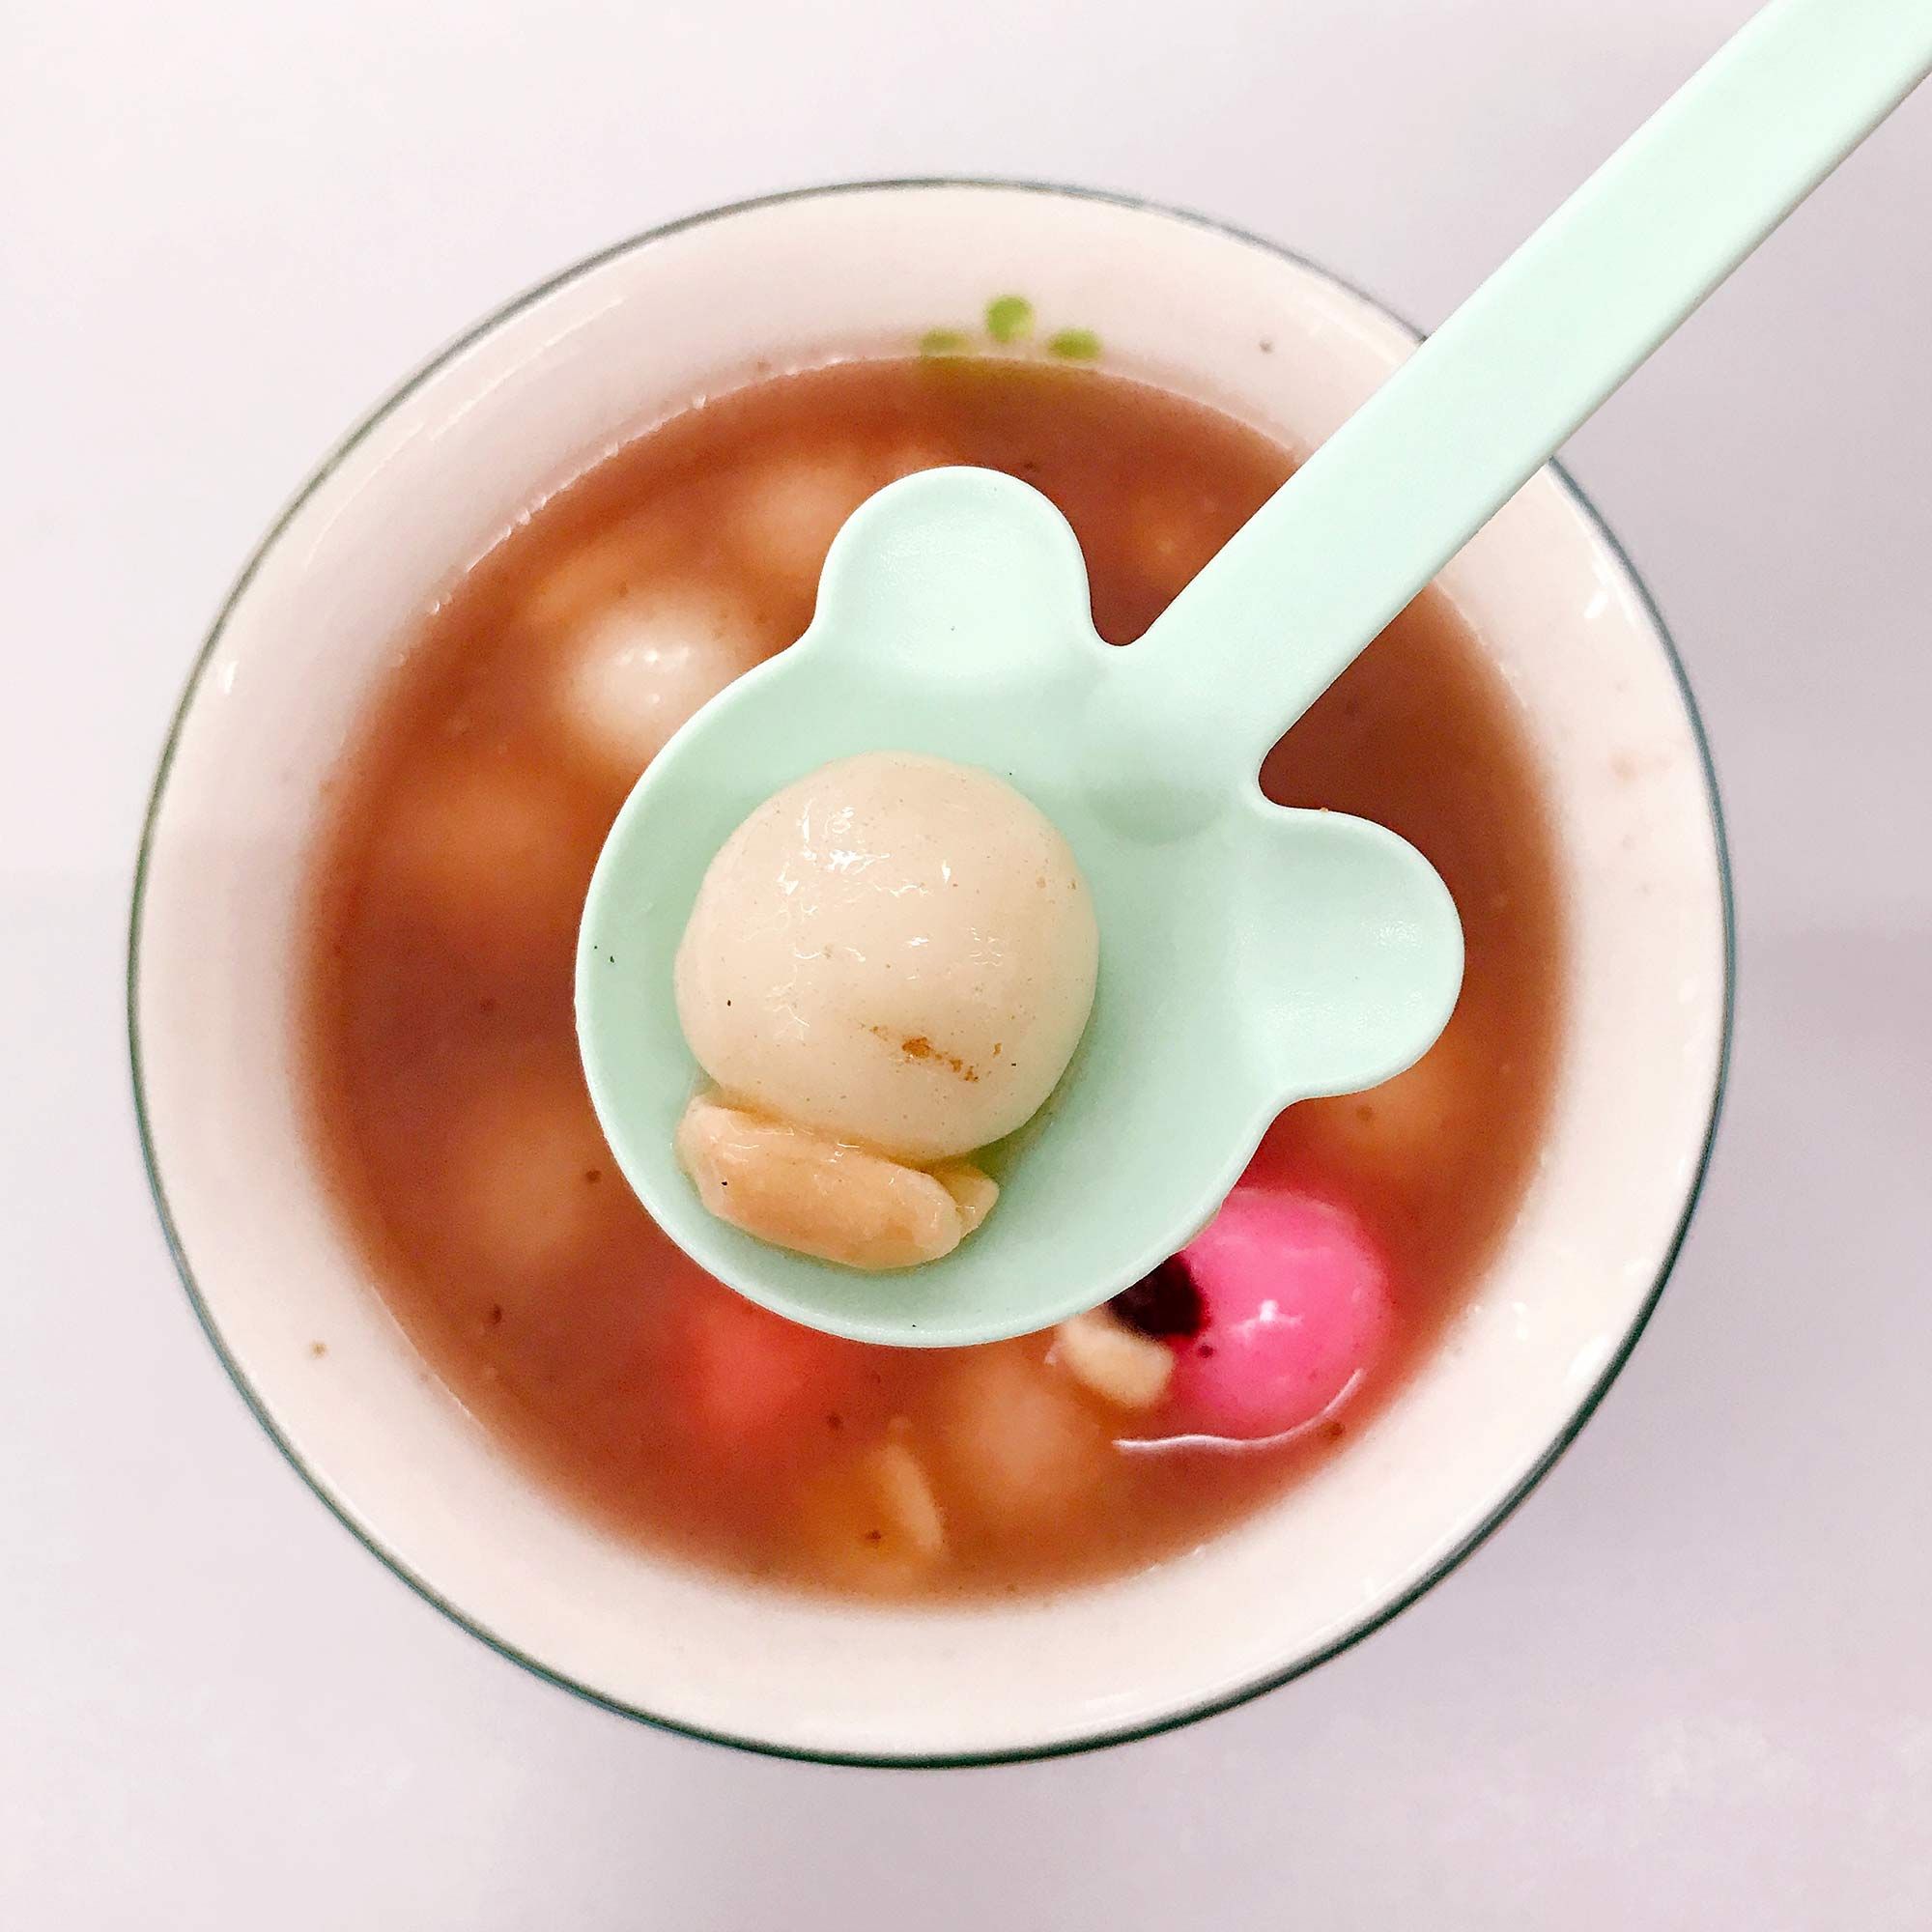 耐熱小熊湯匙適用於熱粥、熱湯、燉飯等溫度較高的餐點